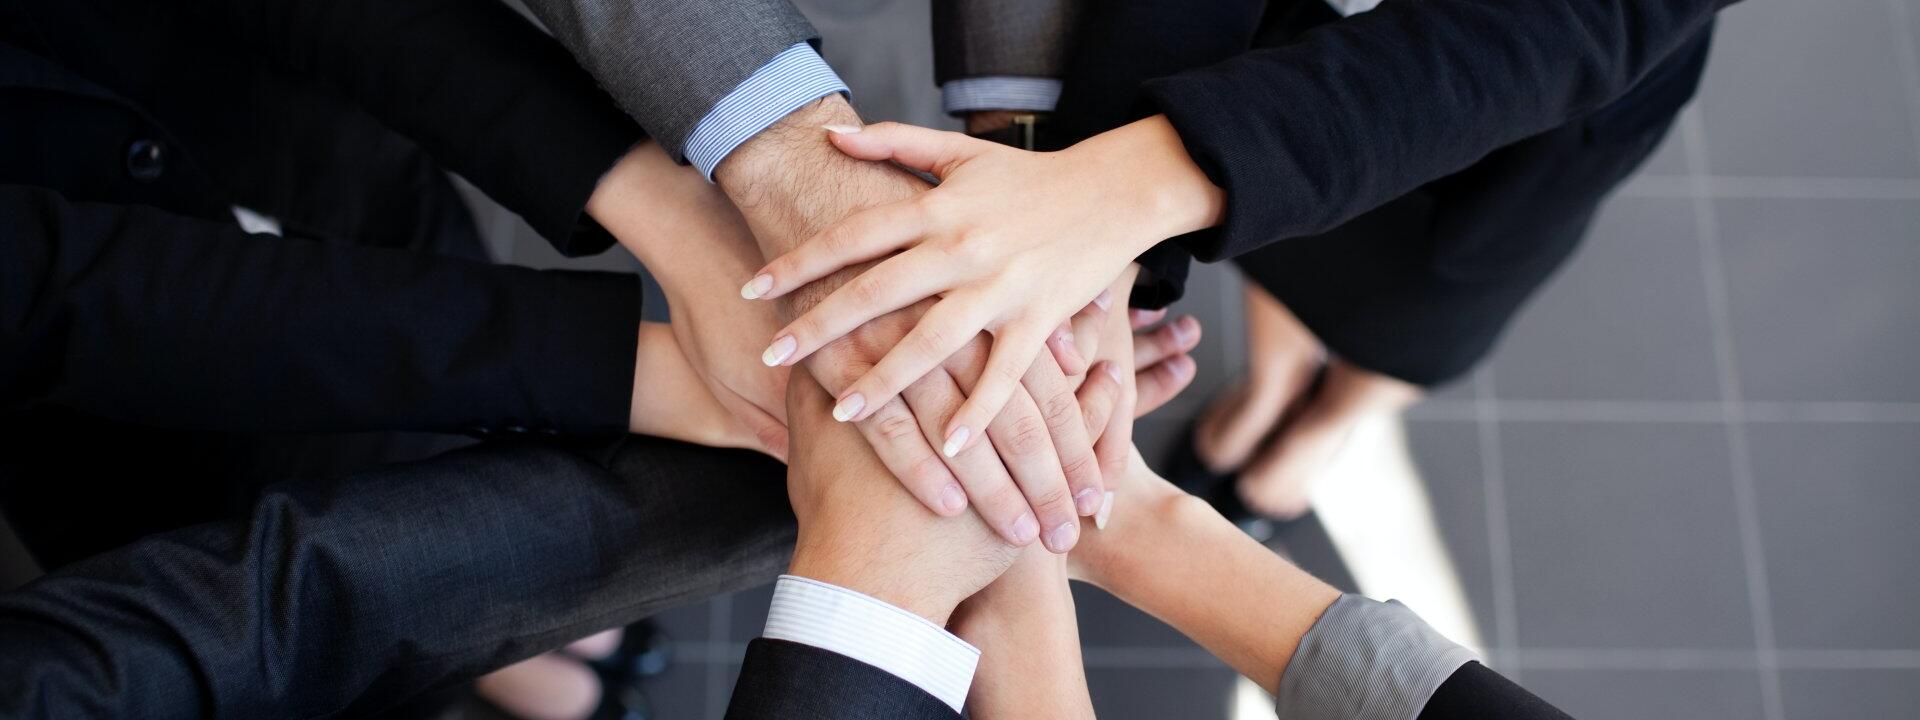 przykładowe zdjęcie zespołu składającego razem ręce w myśl "razem damy radę"